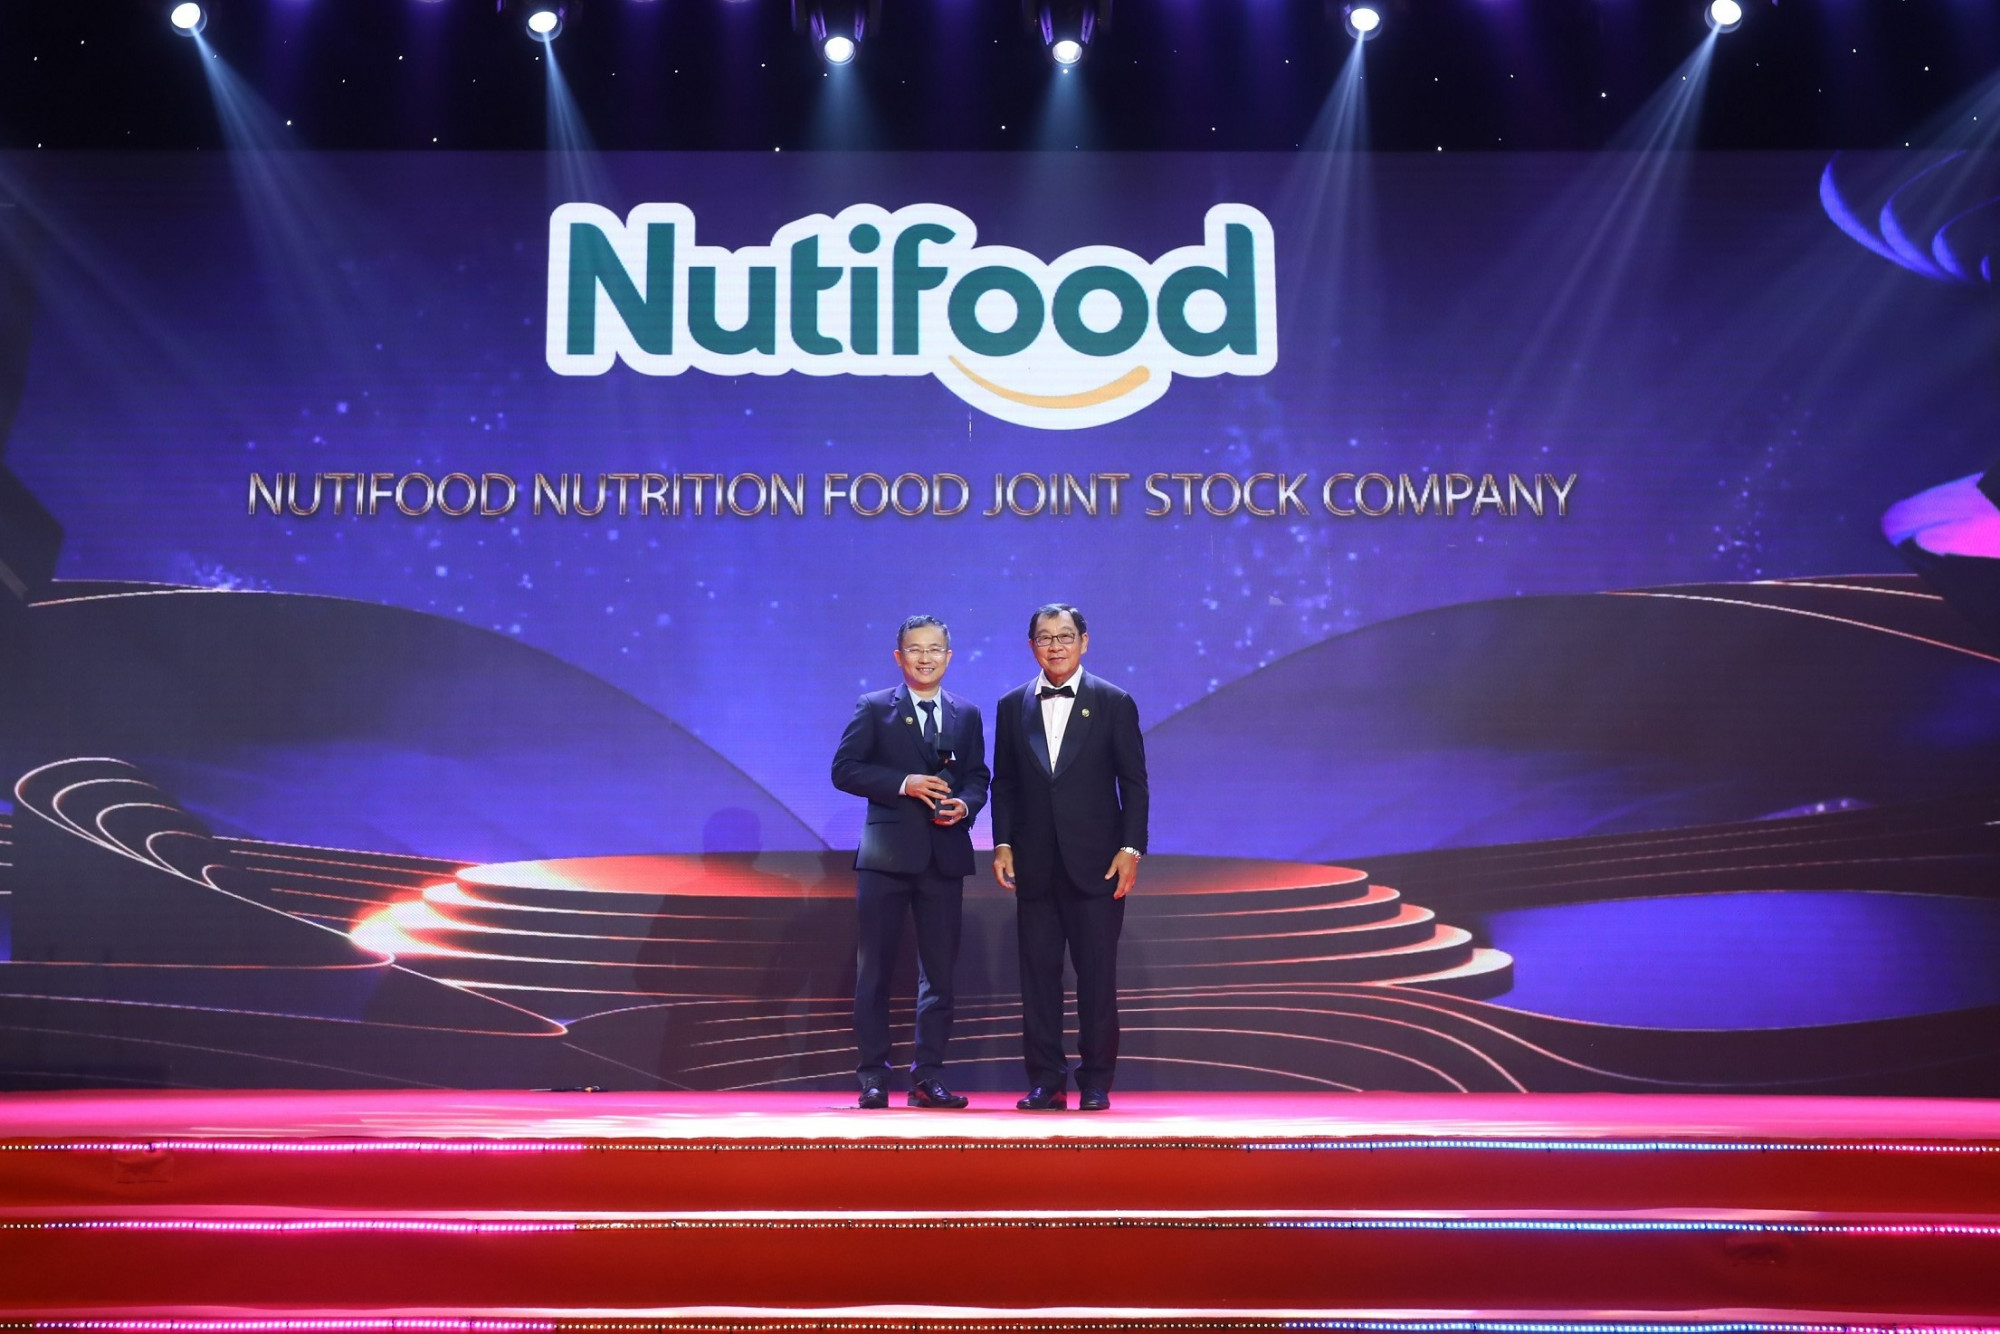 Tiếp nối M&A công ty Thụy Điển, Nutifood bội thu loạt giải thưởng uy tín châu Á - Ảnh 2.